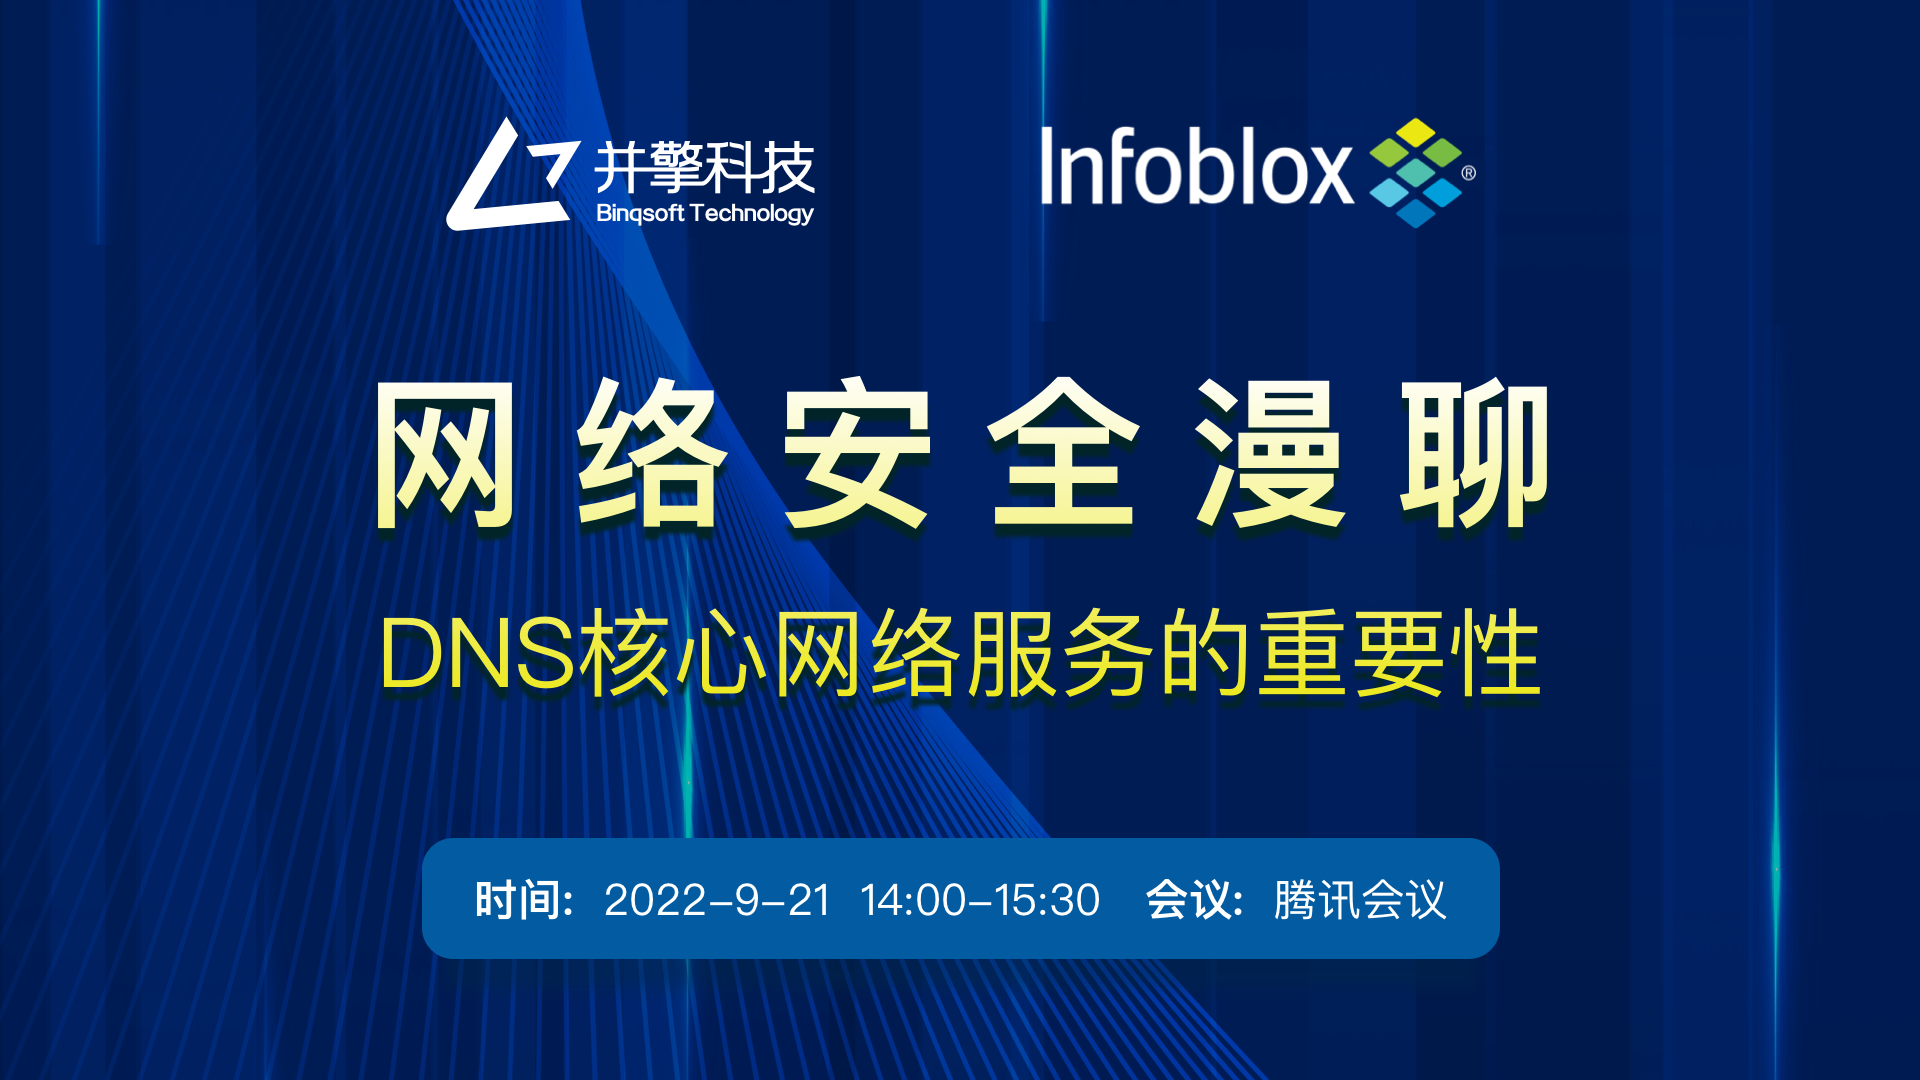 Infoblox | “DNS核心网络服务的重要性”线上研讨会